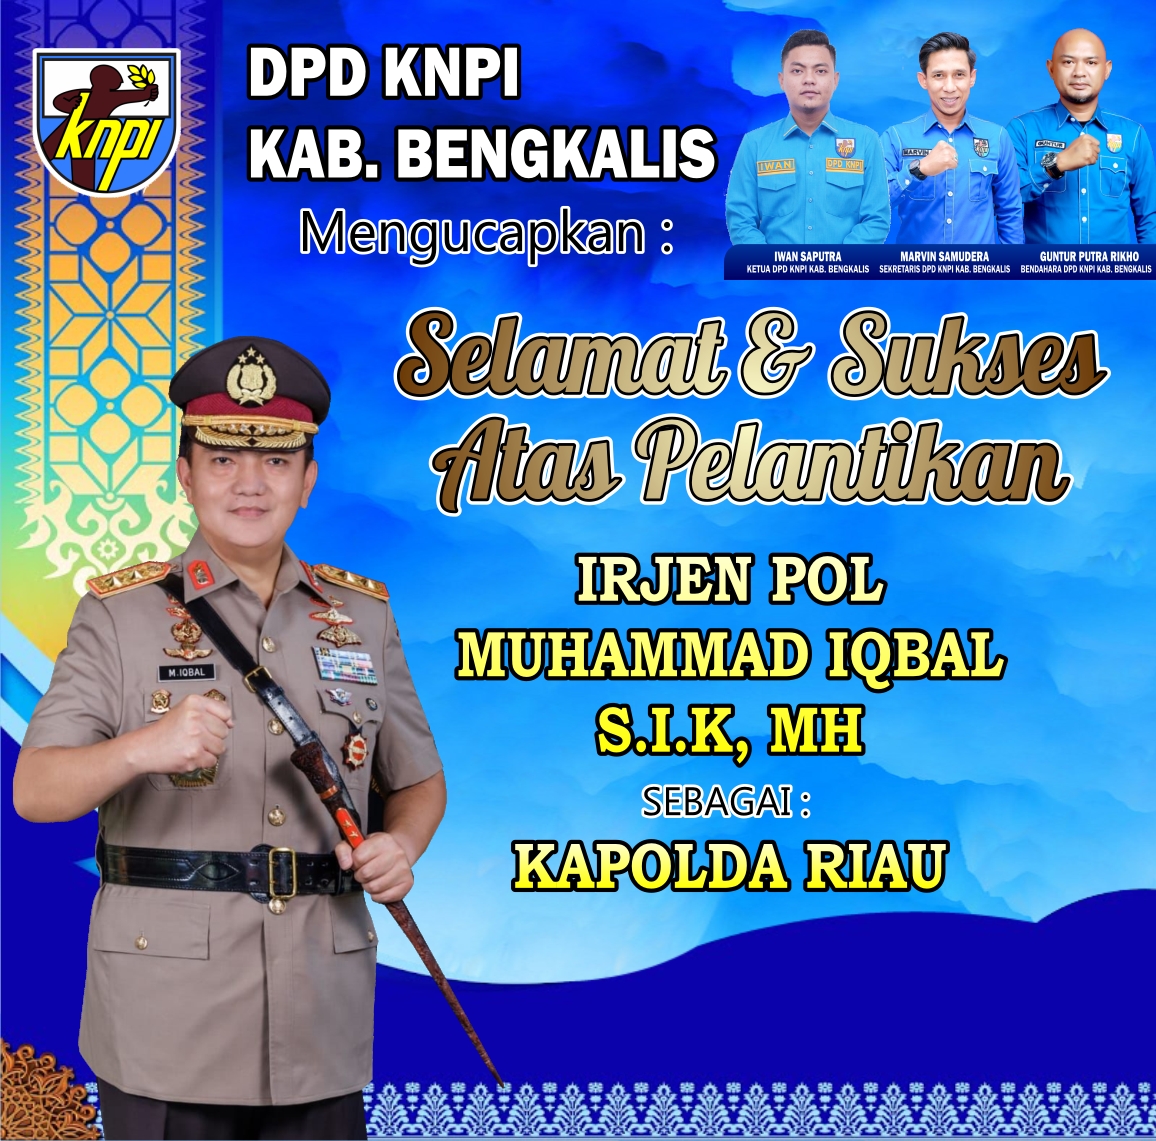 Ketua DPD KNPI Bengkalis : Selamat Kepada Irjen Pol Muhammad Iqbal S.I.K, MH Sebagai Kapolda Riau yang Baru